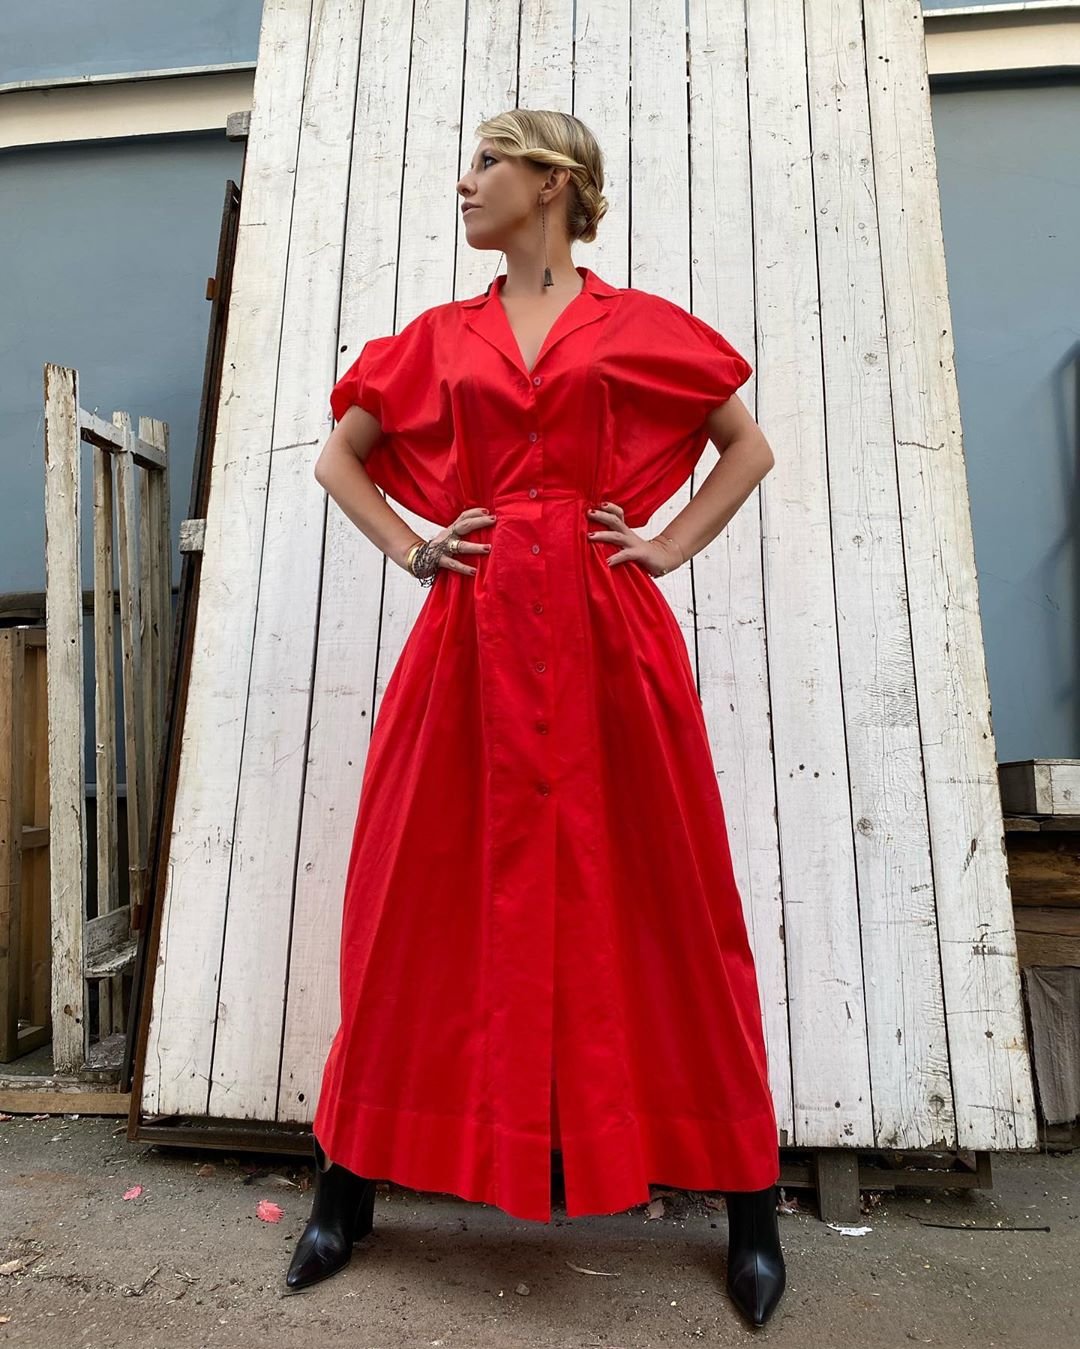 Ксения Собчак в красном платье насладилась сентябрьским солнцем